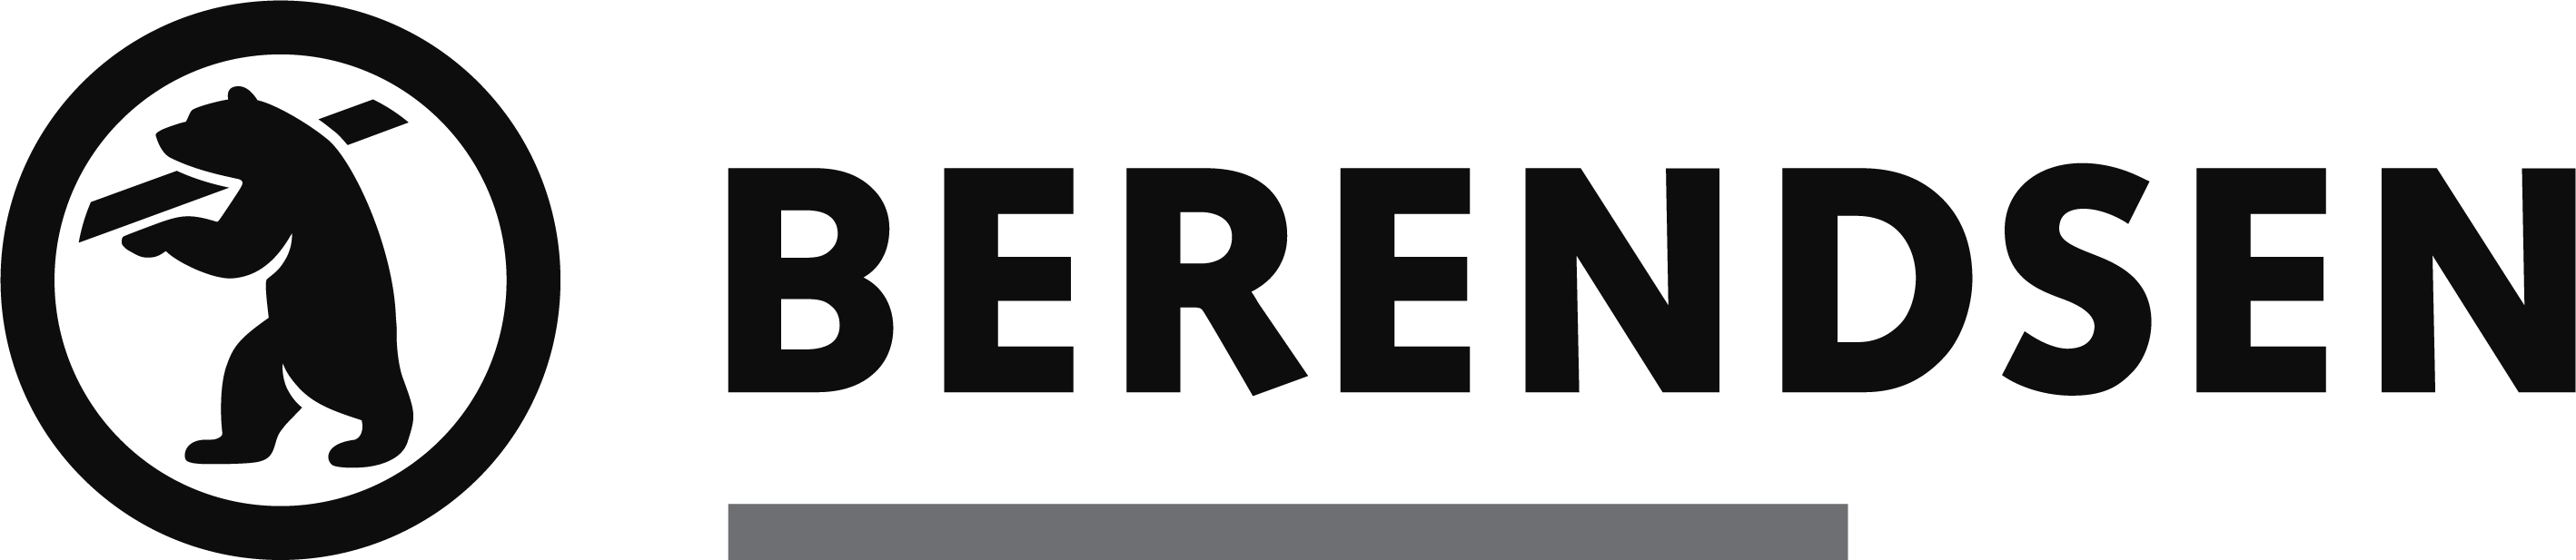 Berendsen logo